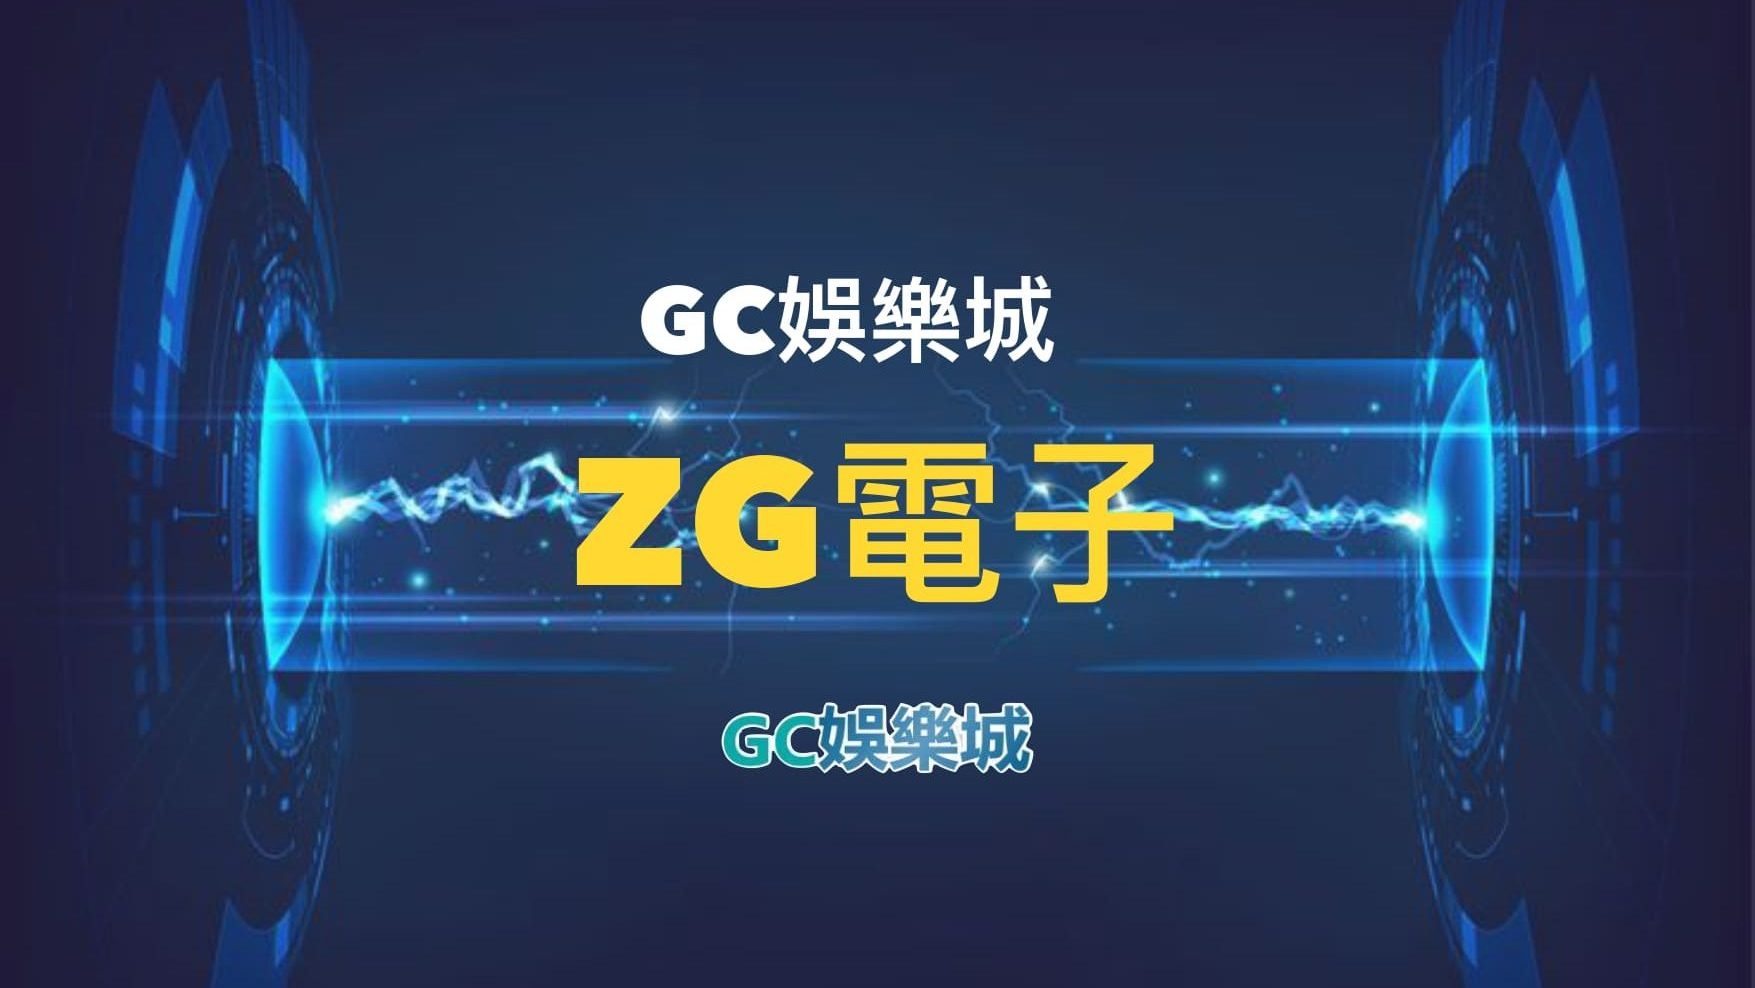 【ZG電子遊戲詳細介紹】探索ZG電子老虎機系統的精彩內容！